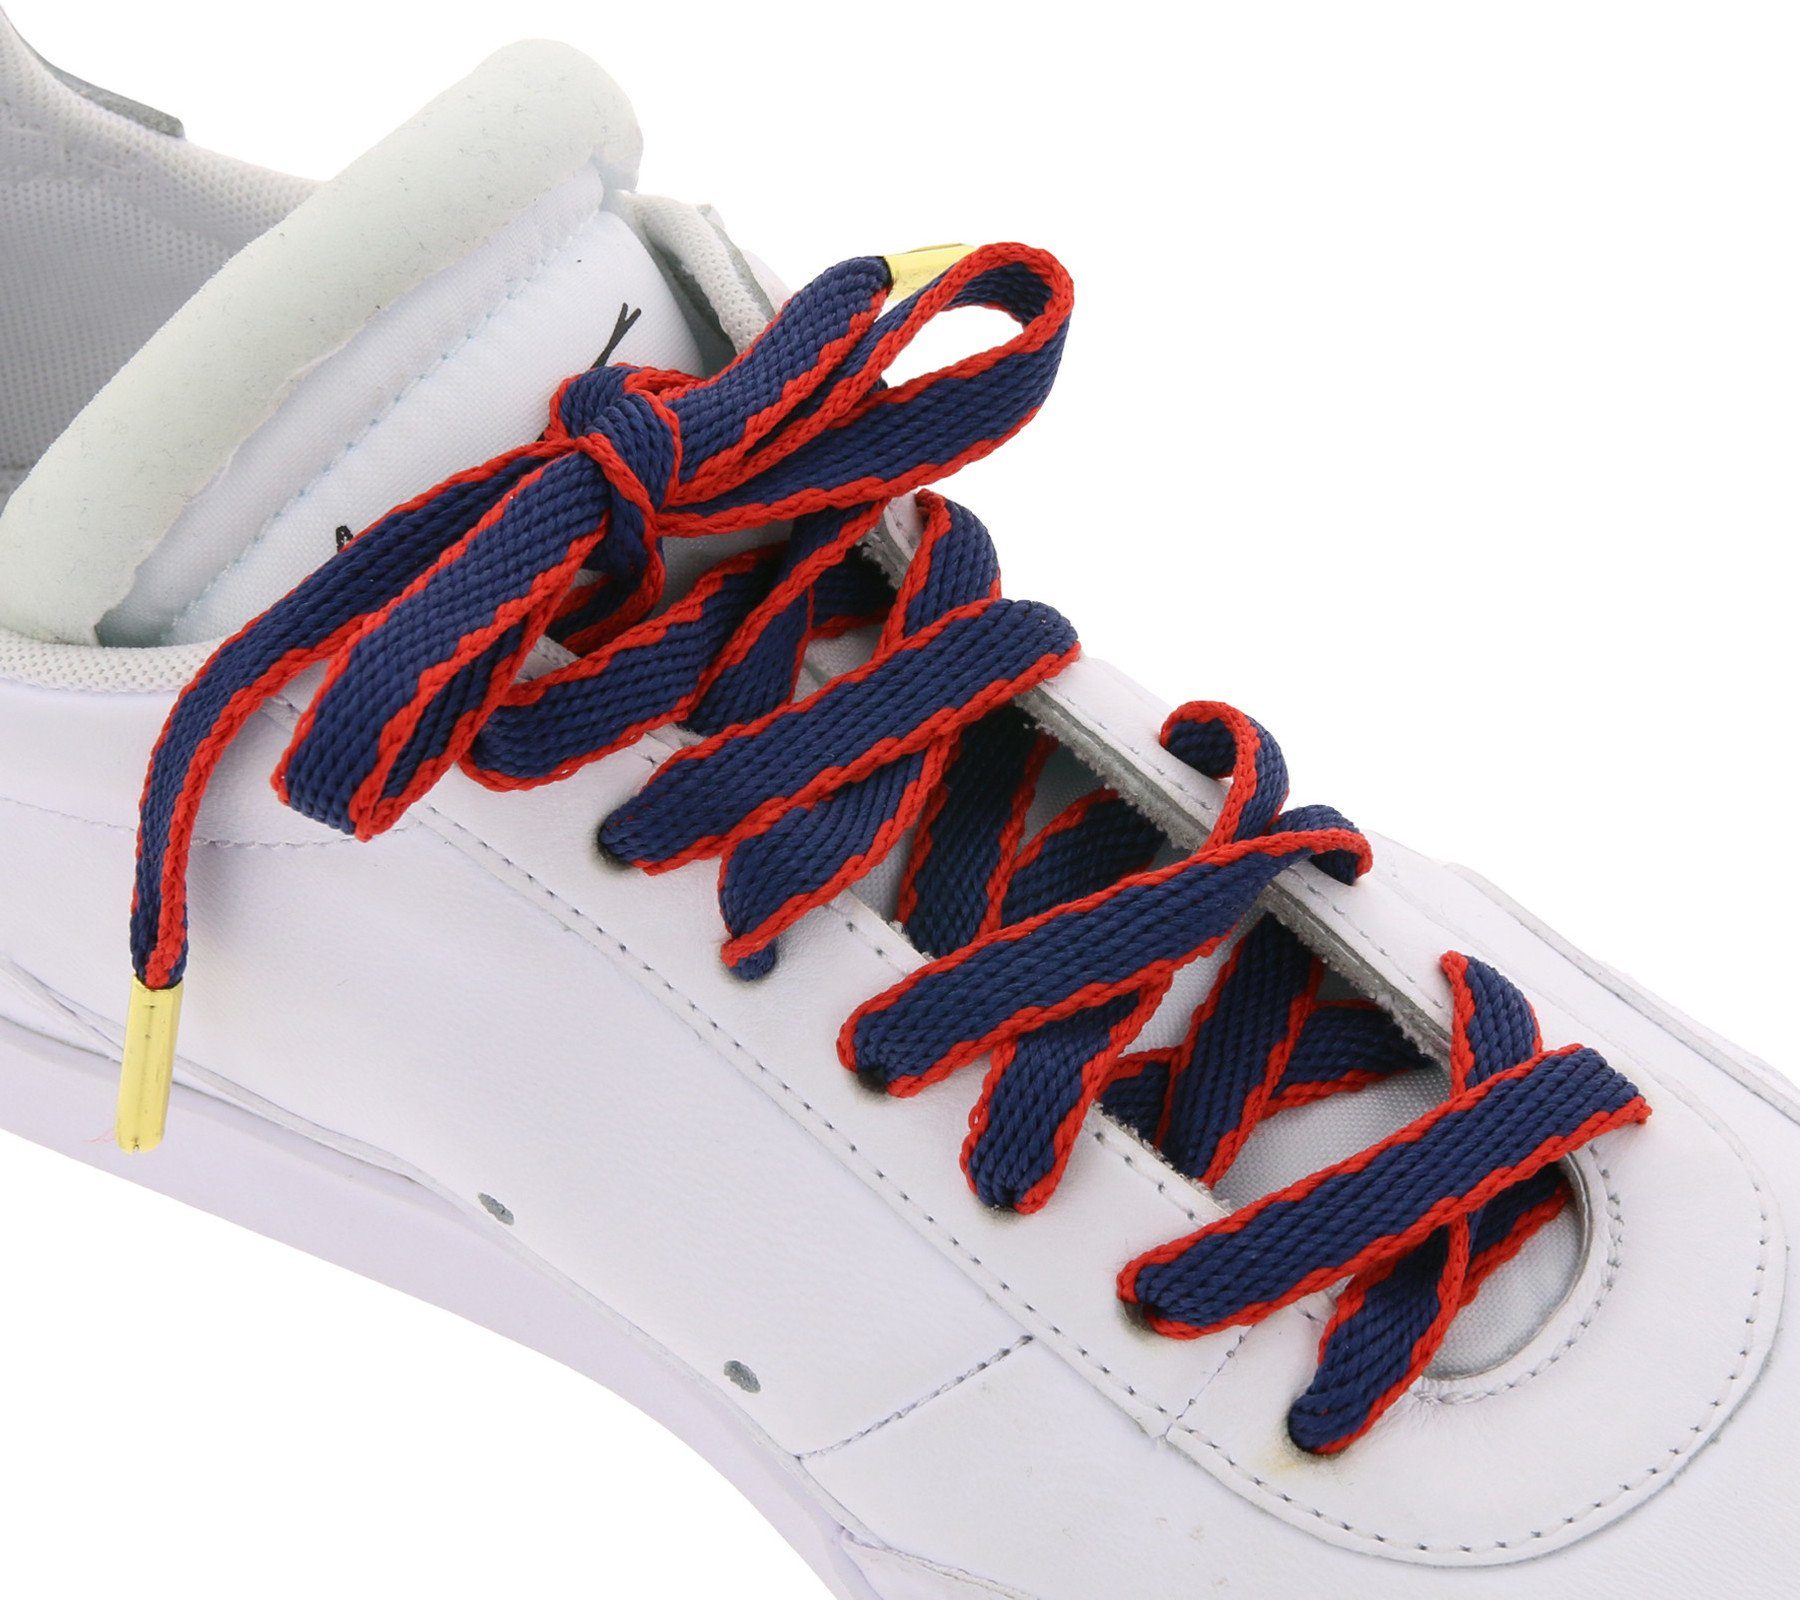 Schnürsenkel top Schnürsenkel Schuhe Schnürbänder angesagte TubeLaces Schuhbänder Tubelaces Navy/Rot